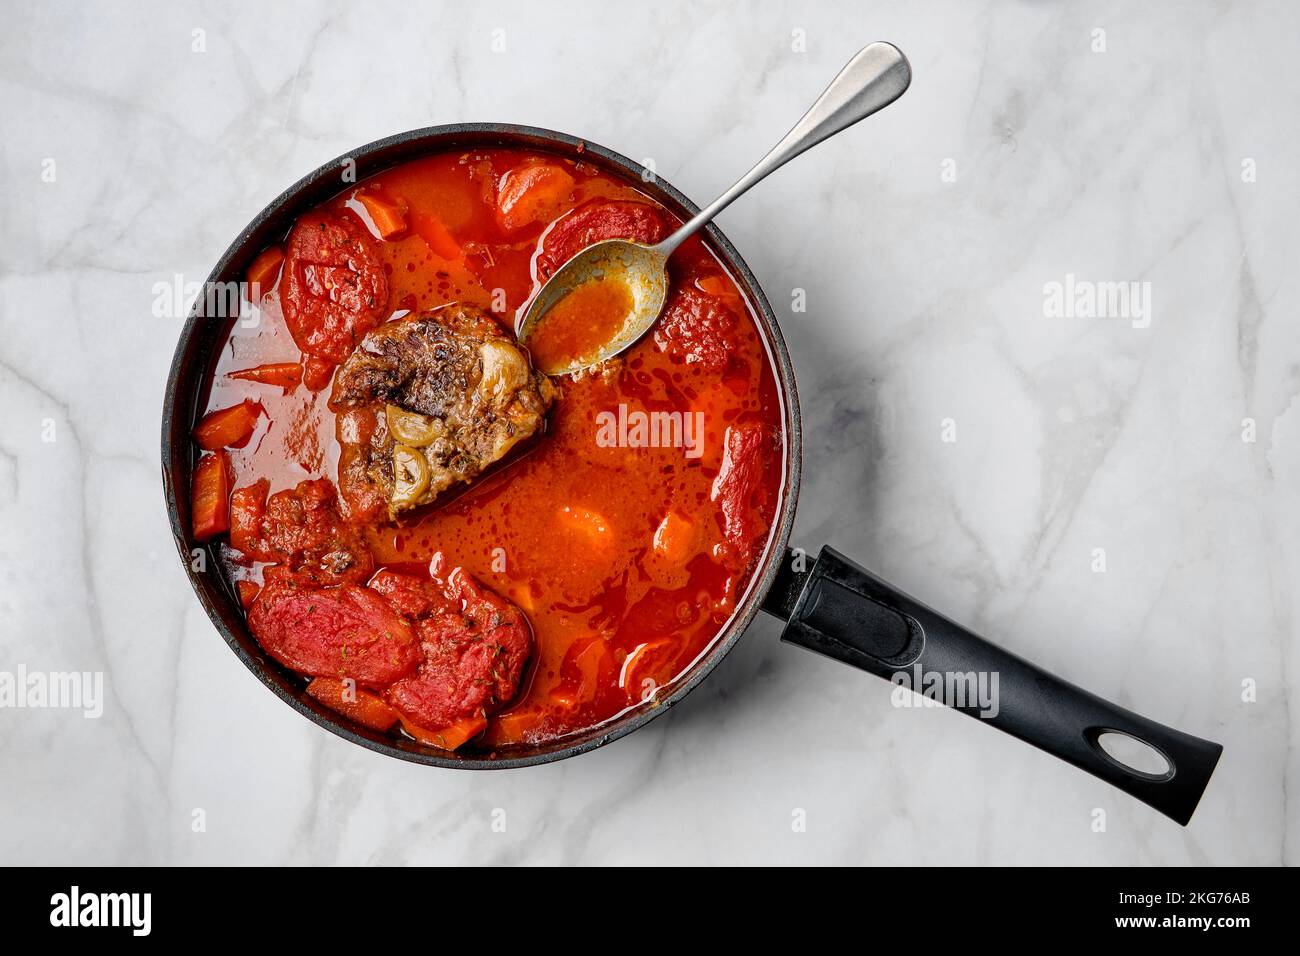 Cuisson lente des aliments. Ragoût de viande de bœuf rôtie avec tomates et carottes Banque D'Images